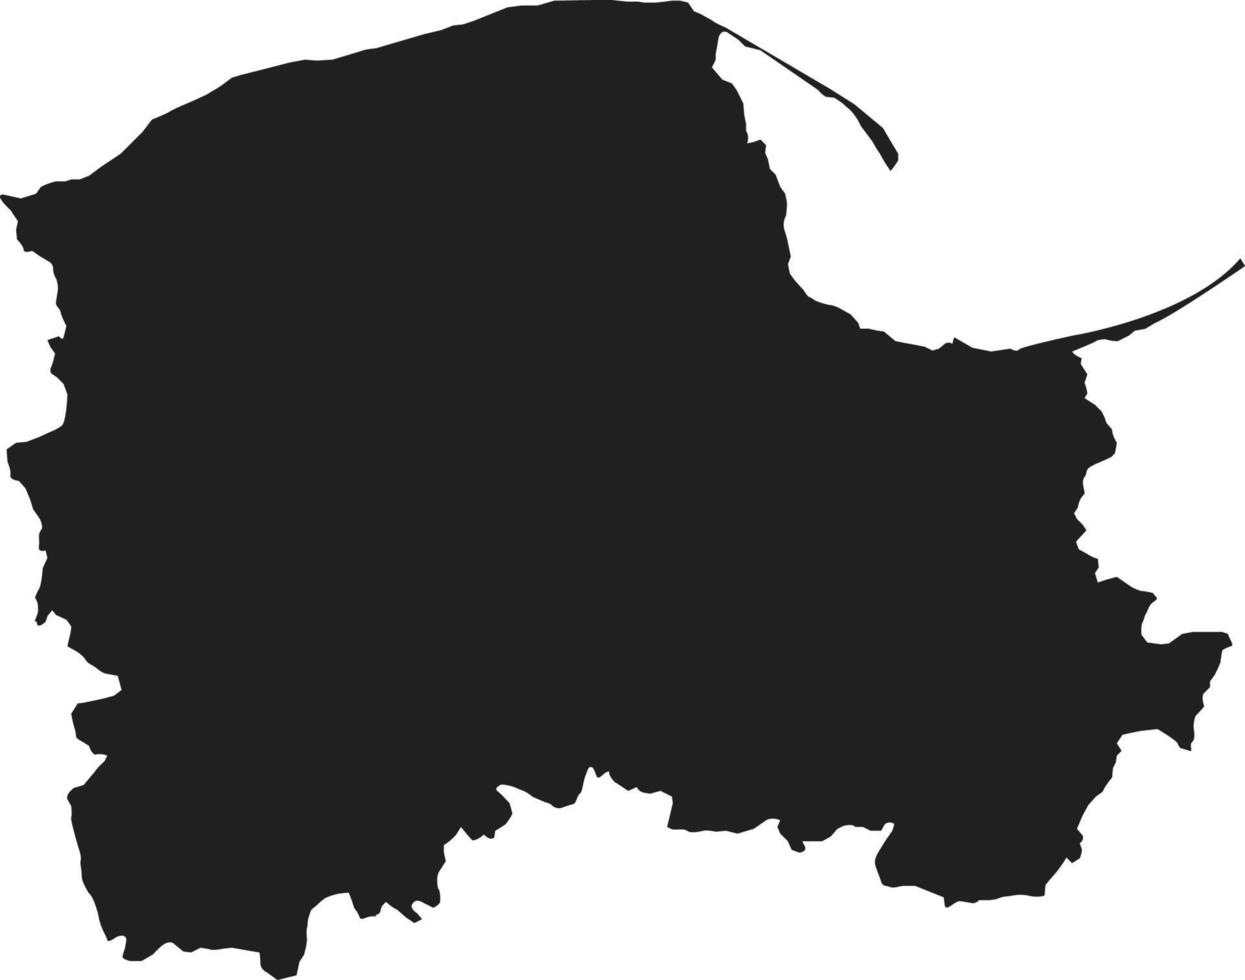 silueta de Polonia país mapa,pomerania voivodato mapa.mano dibujado minimalismo estilo. vector